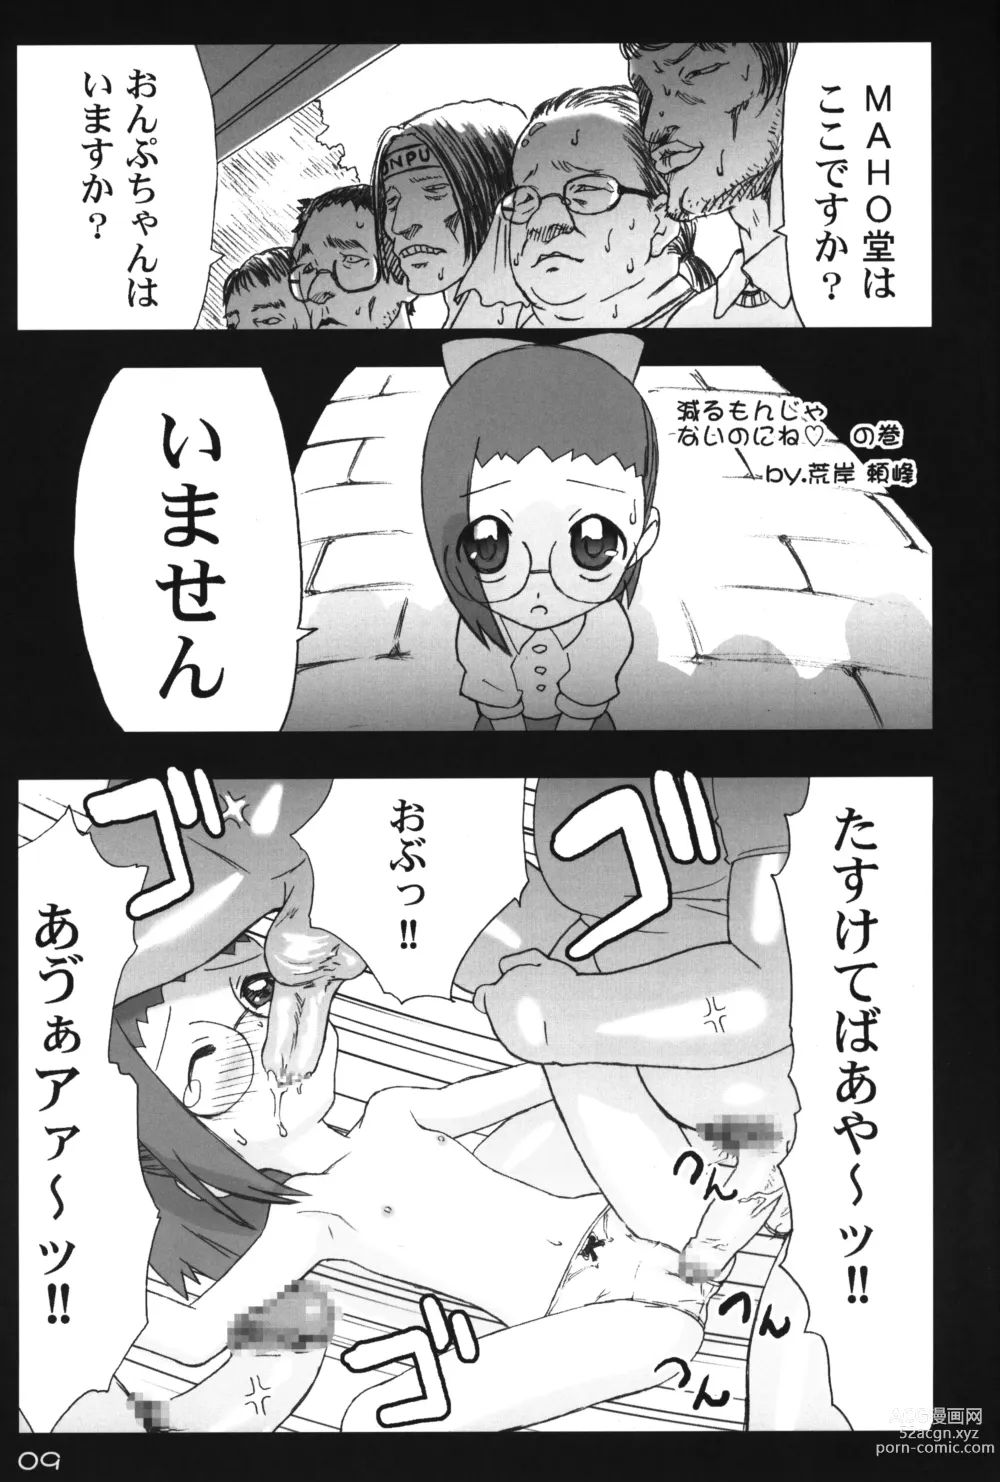 Page 8 of doujinshi Hana no Ana